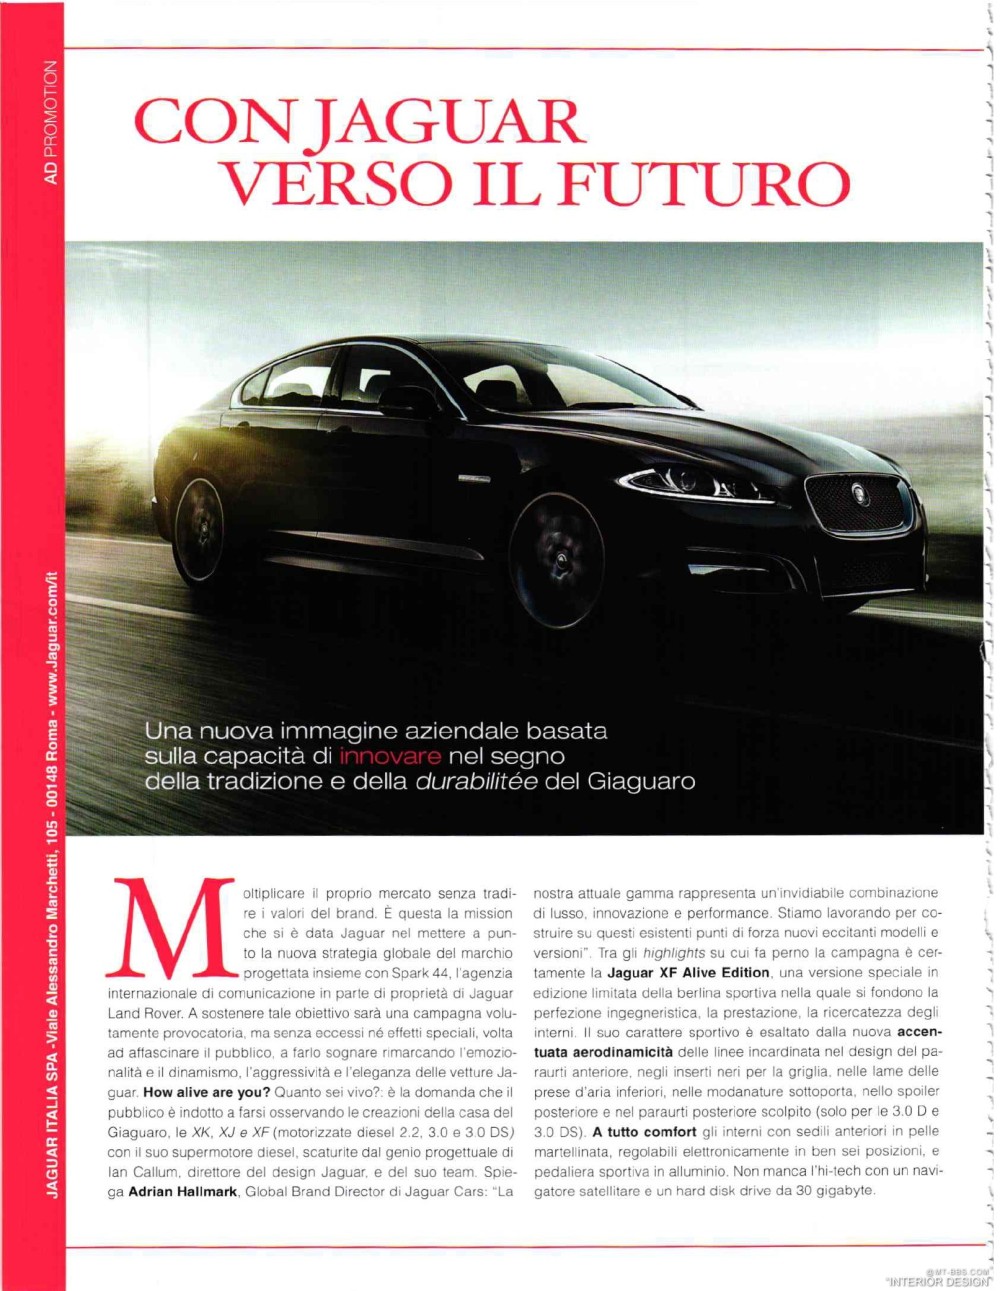 意大利AD 杂志 2012年全年JPG高清版本 全免（上传完毕）_0072.jpg